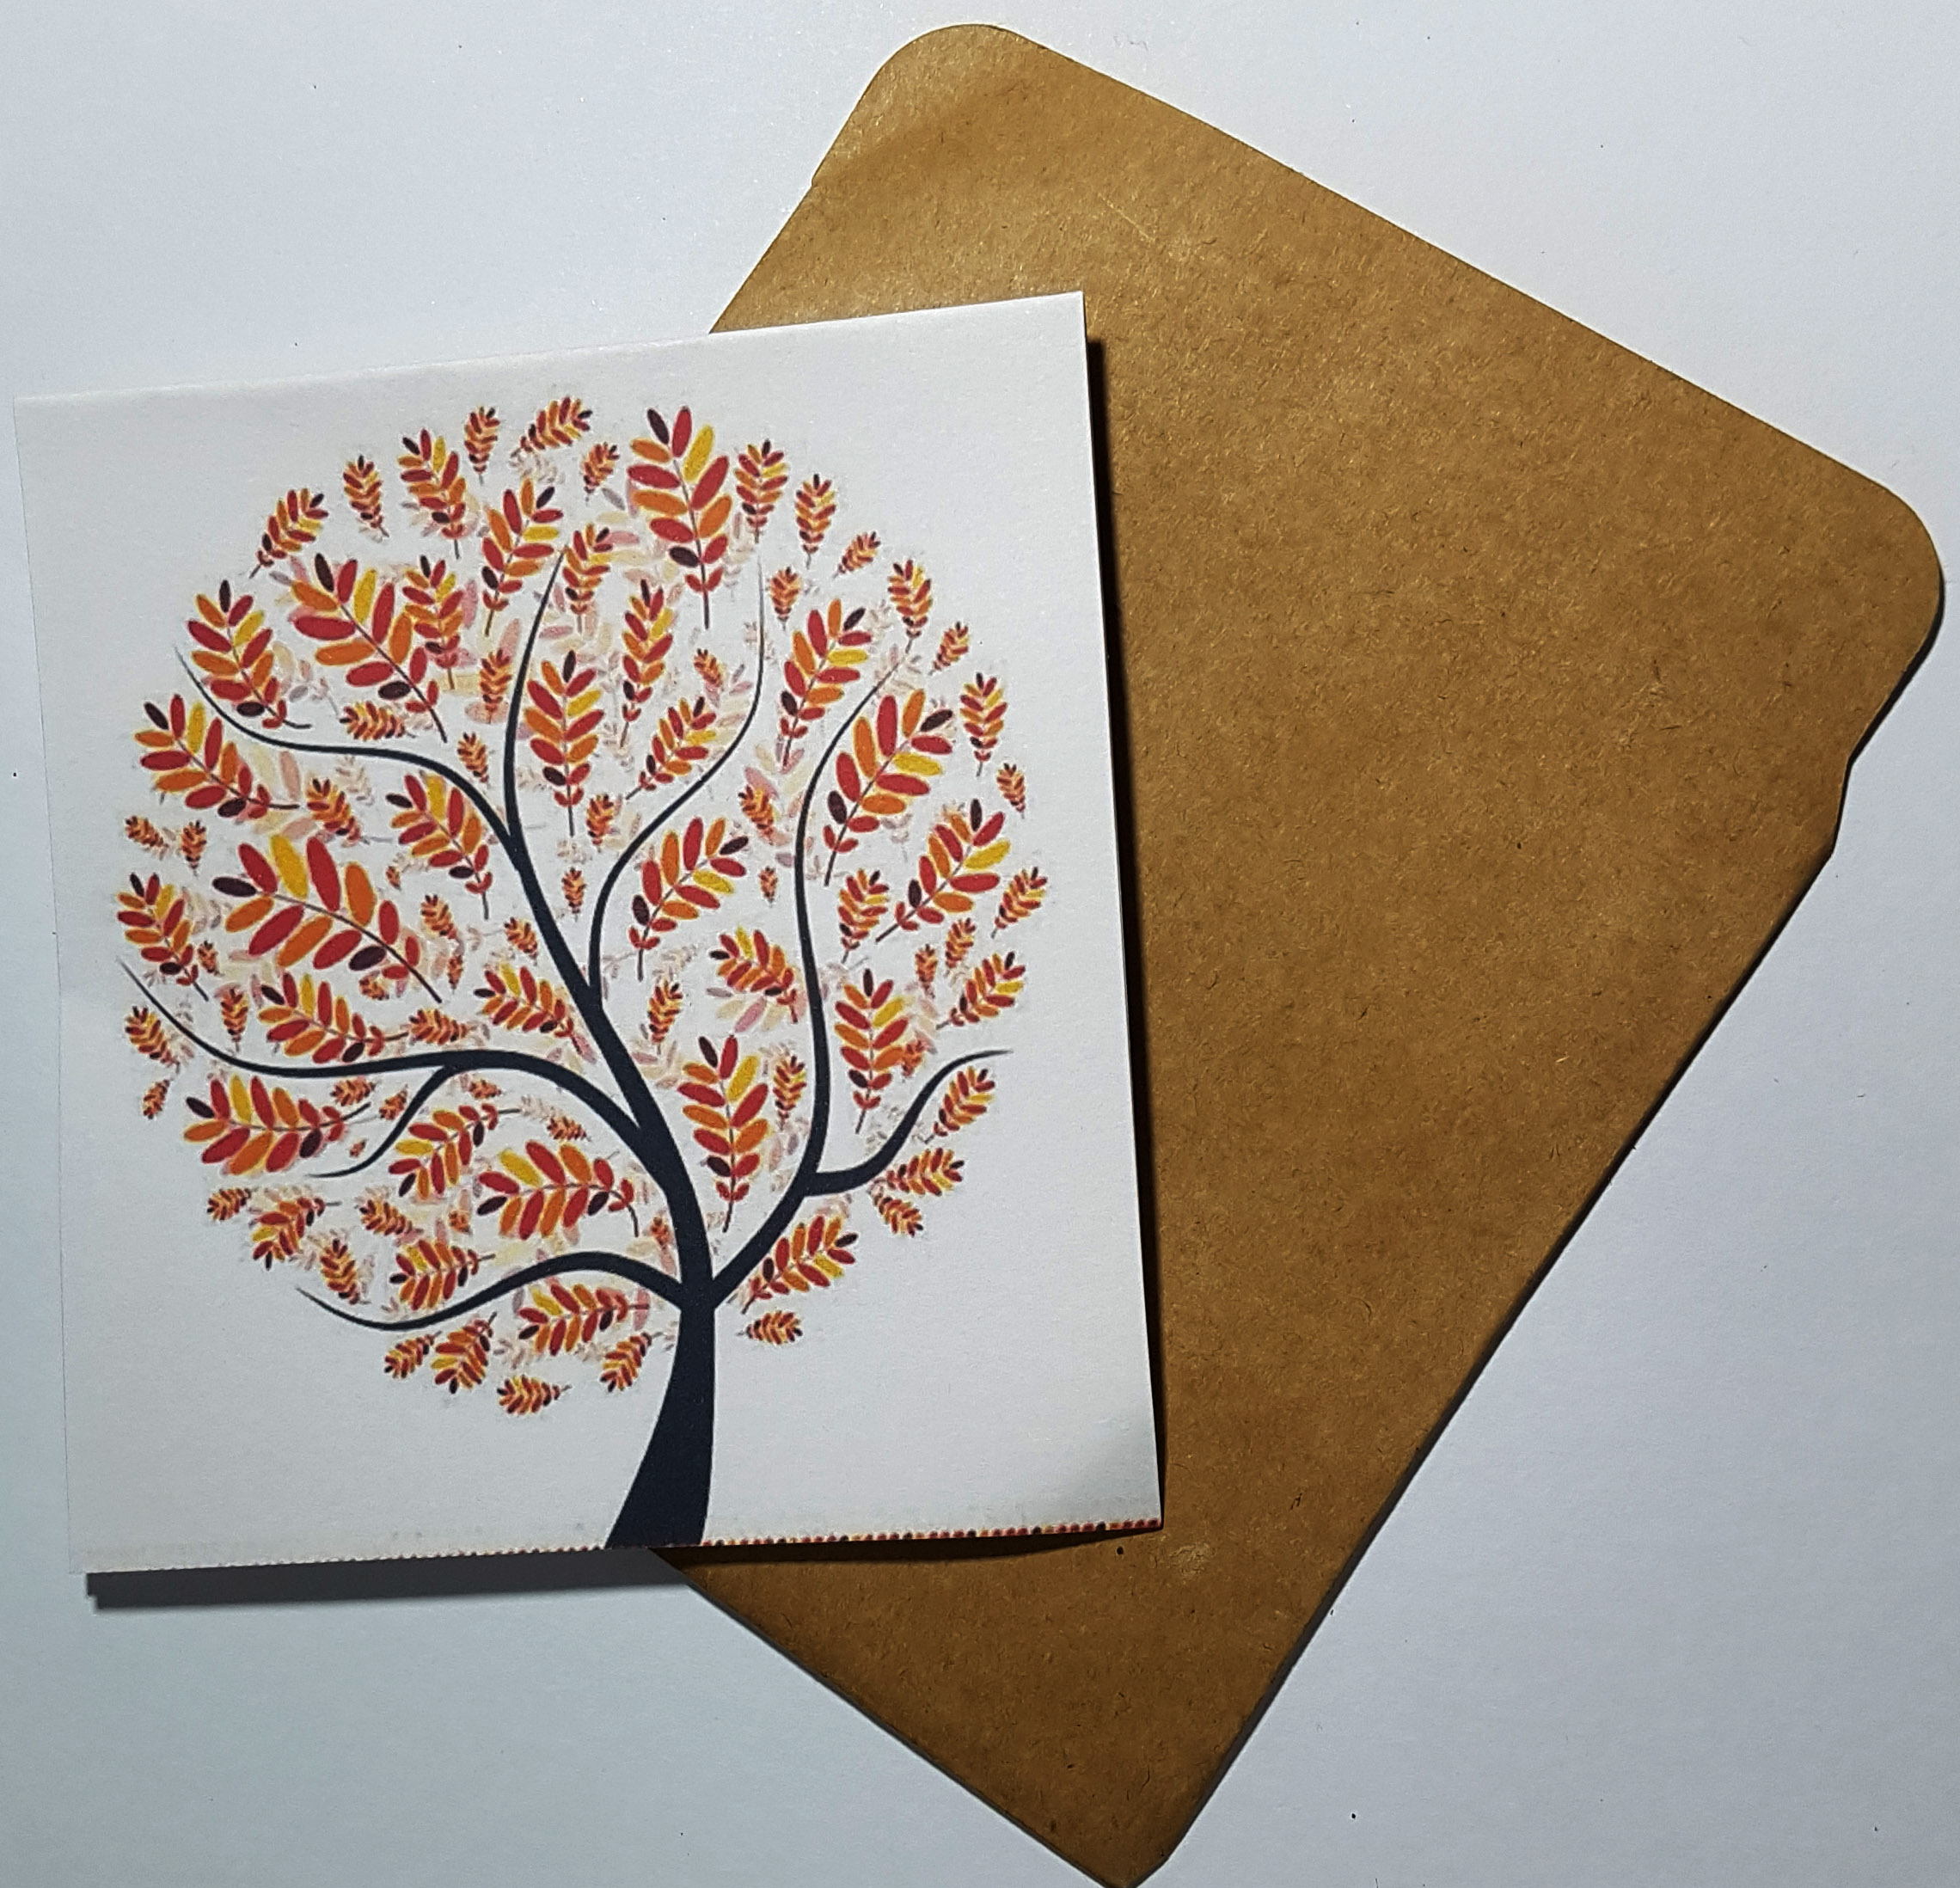 Thiệp in hình cây phong cách làm card quà cám ơn ,chúc mừng sinh nhật và giử tặng người thân yêu.